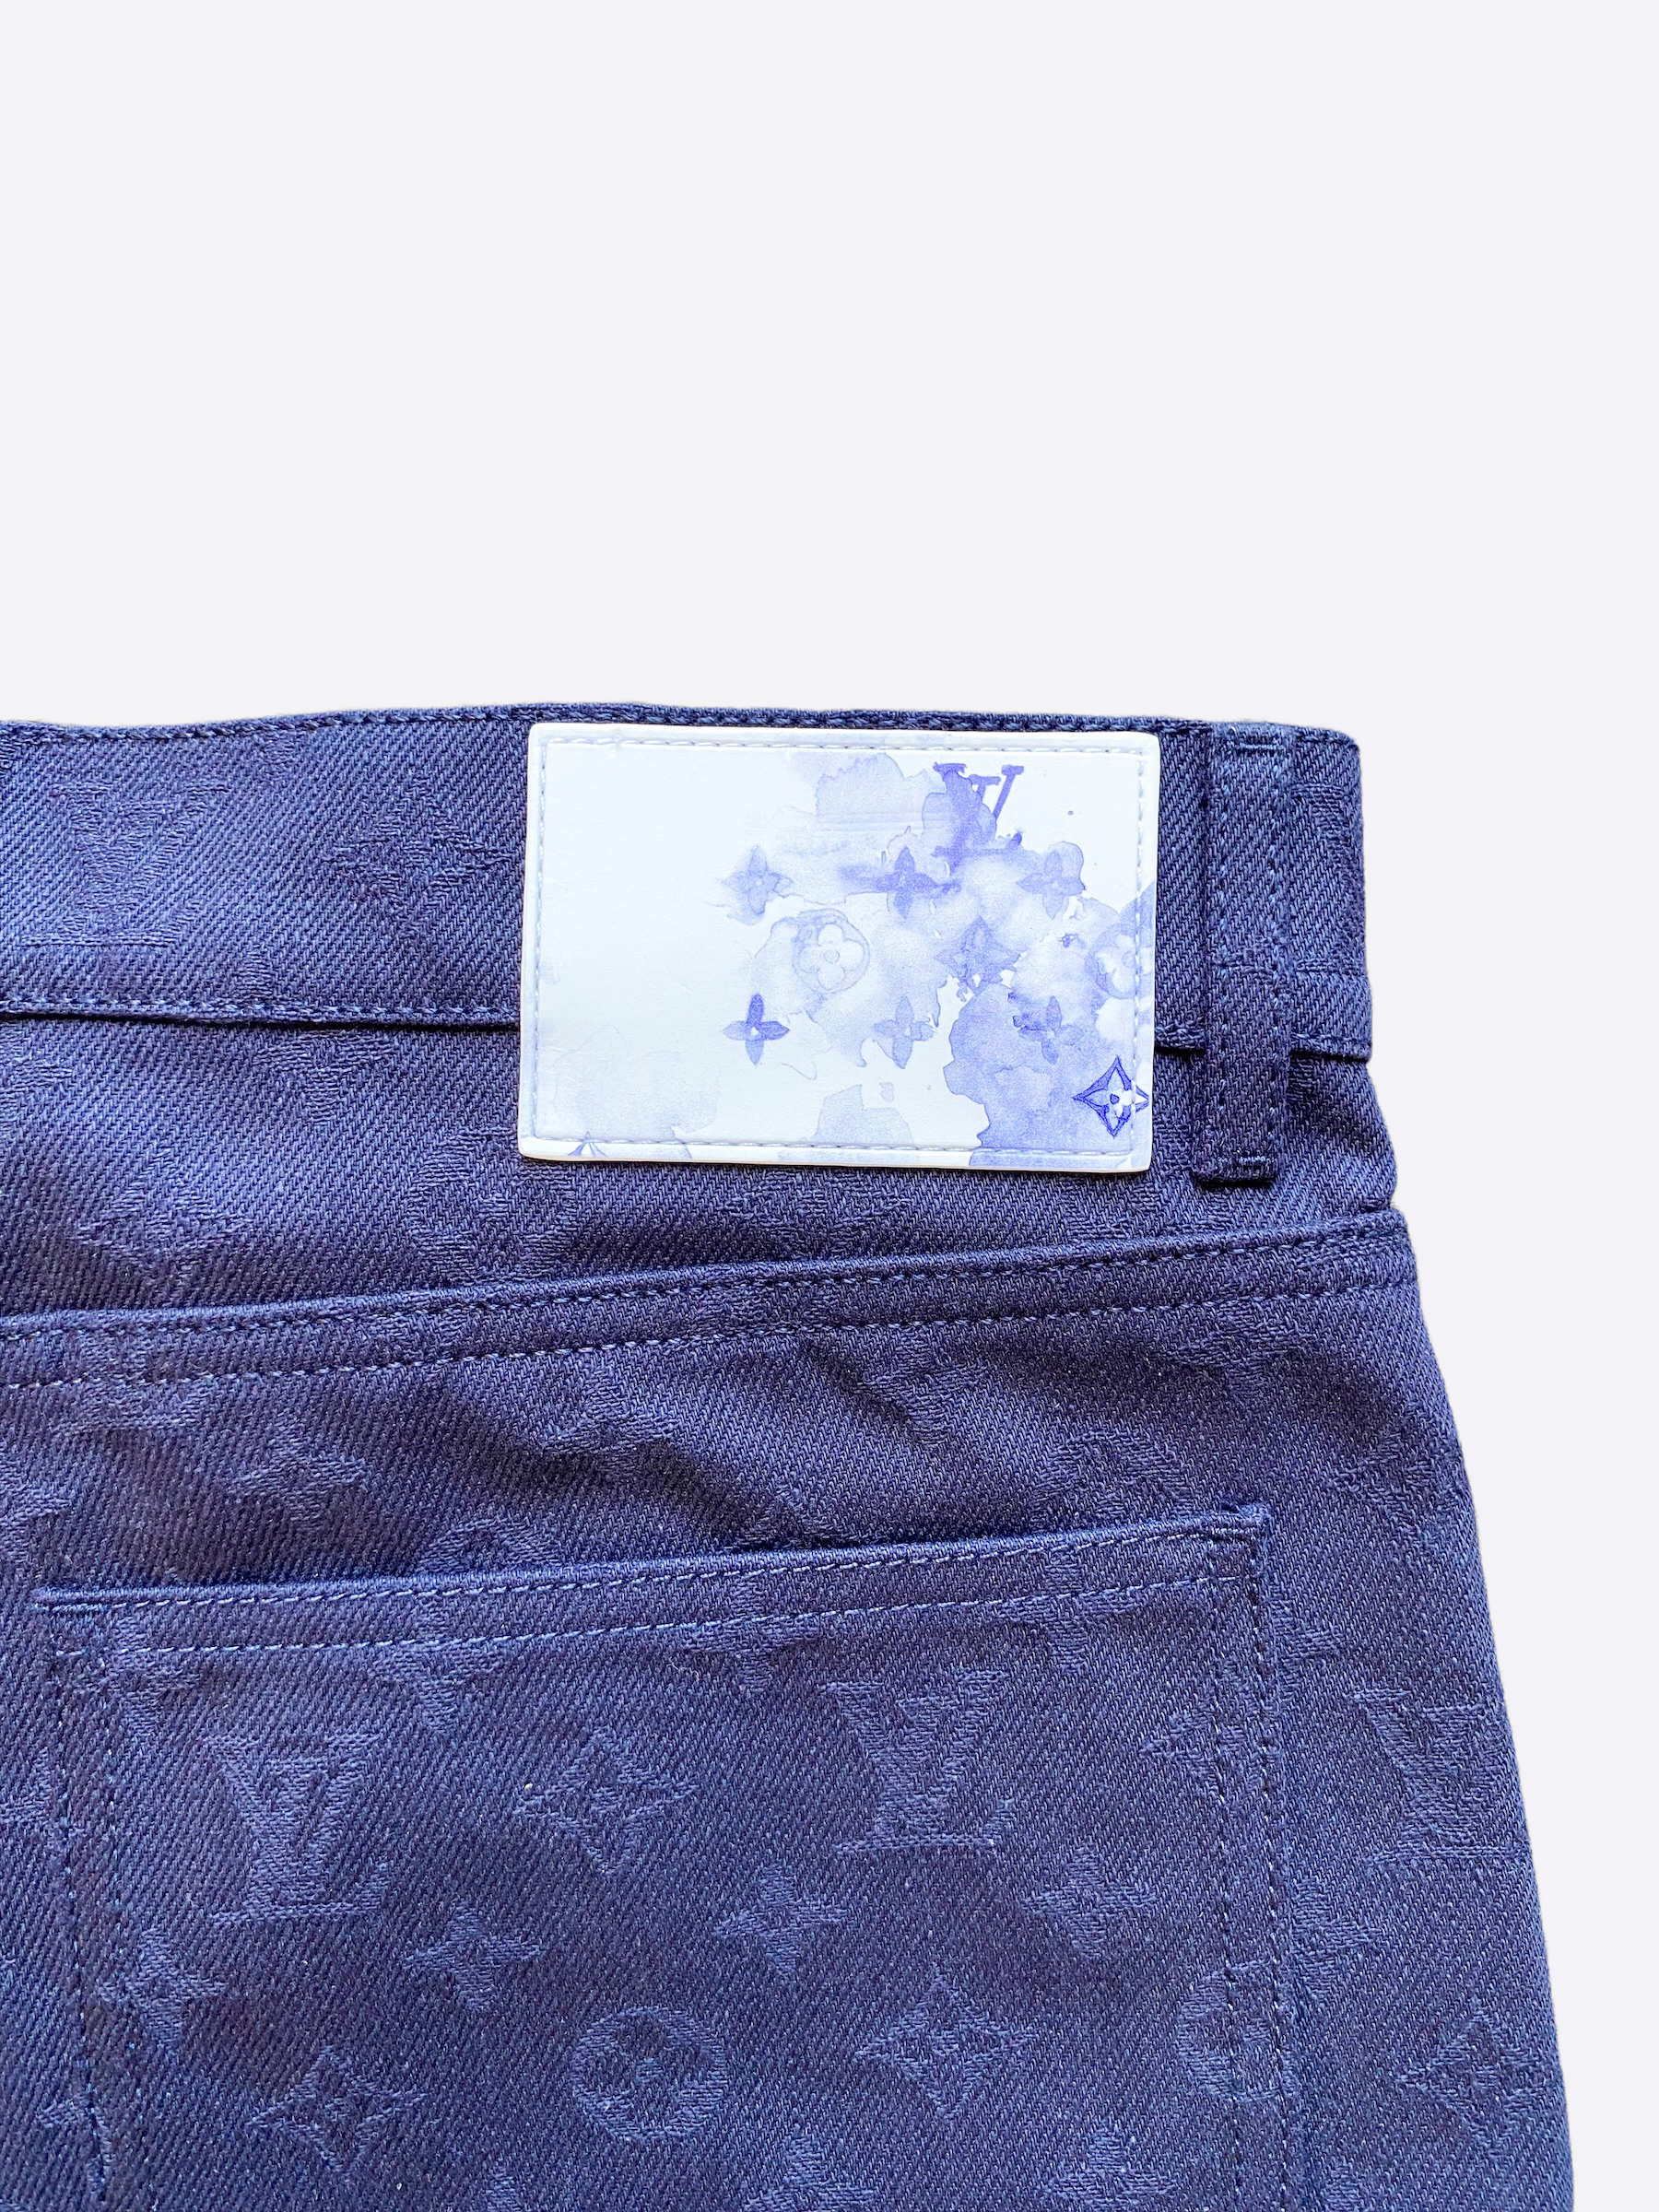 Louis Vuitton Dark Blue Monogram Cargo Pants – Savonches